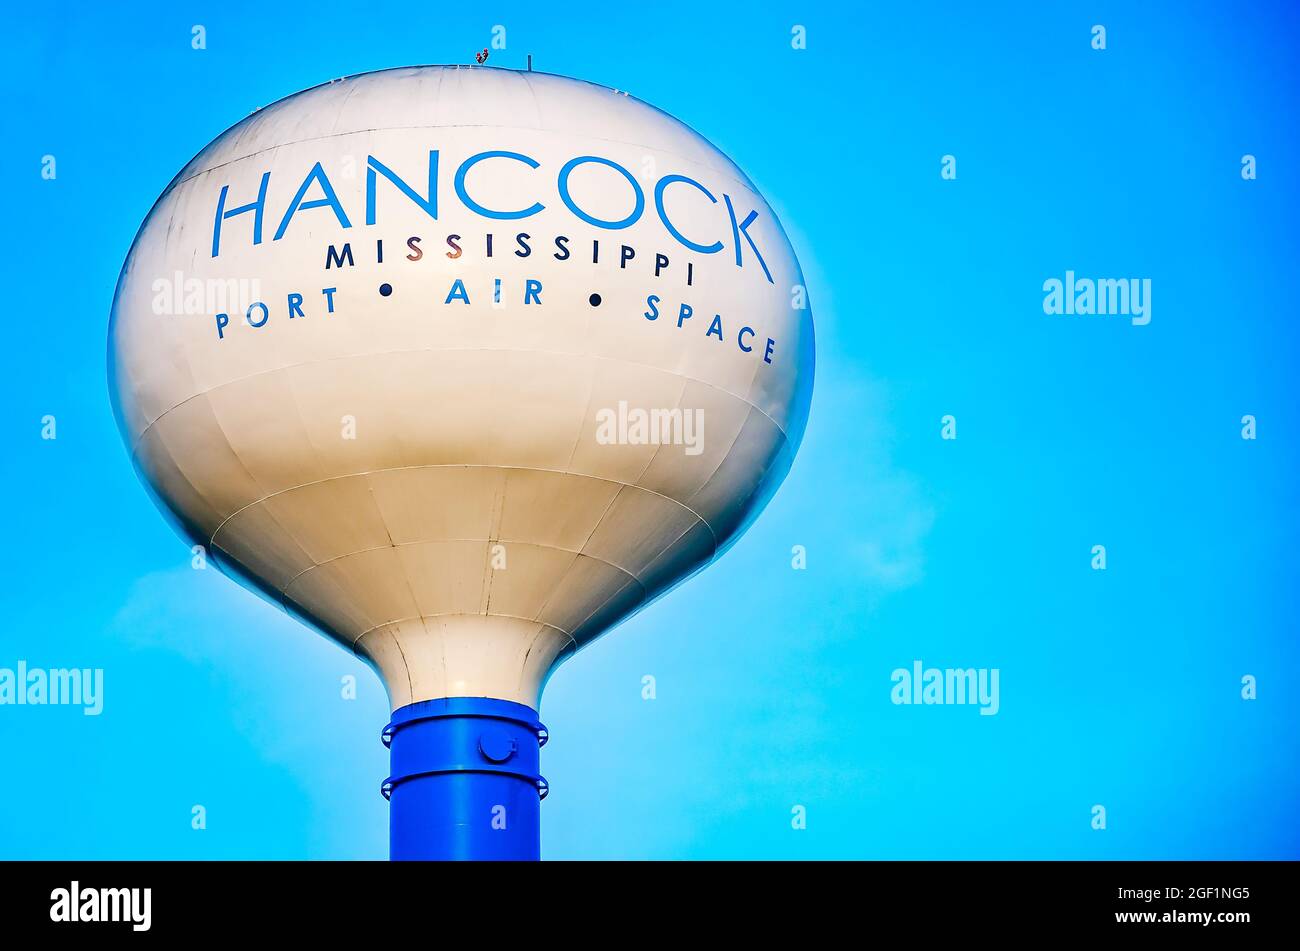 Une tour d’eau met en lumière les initiatives de développement économique du comté de Hancock dans les domaines du port, de l’air et de l’espace, le 21 août 2021, À Kiln, Mississippi. Banque D'Images